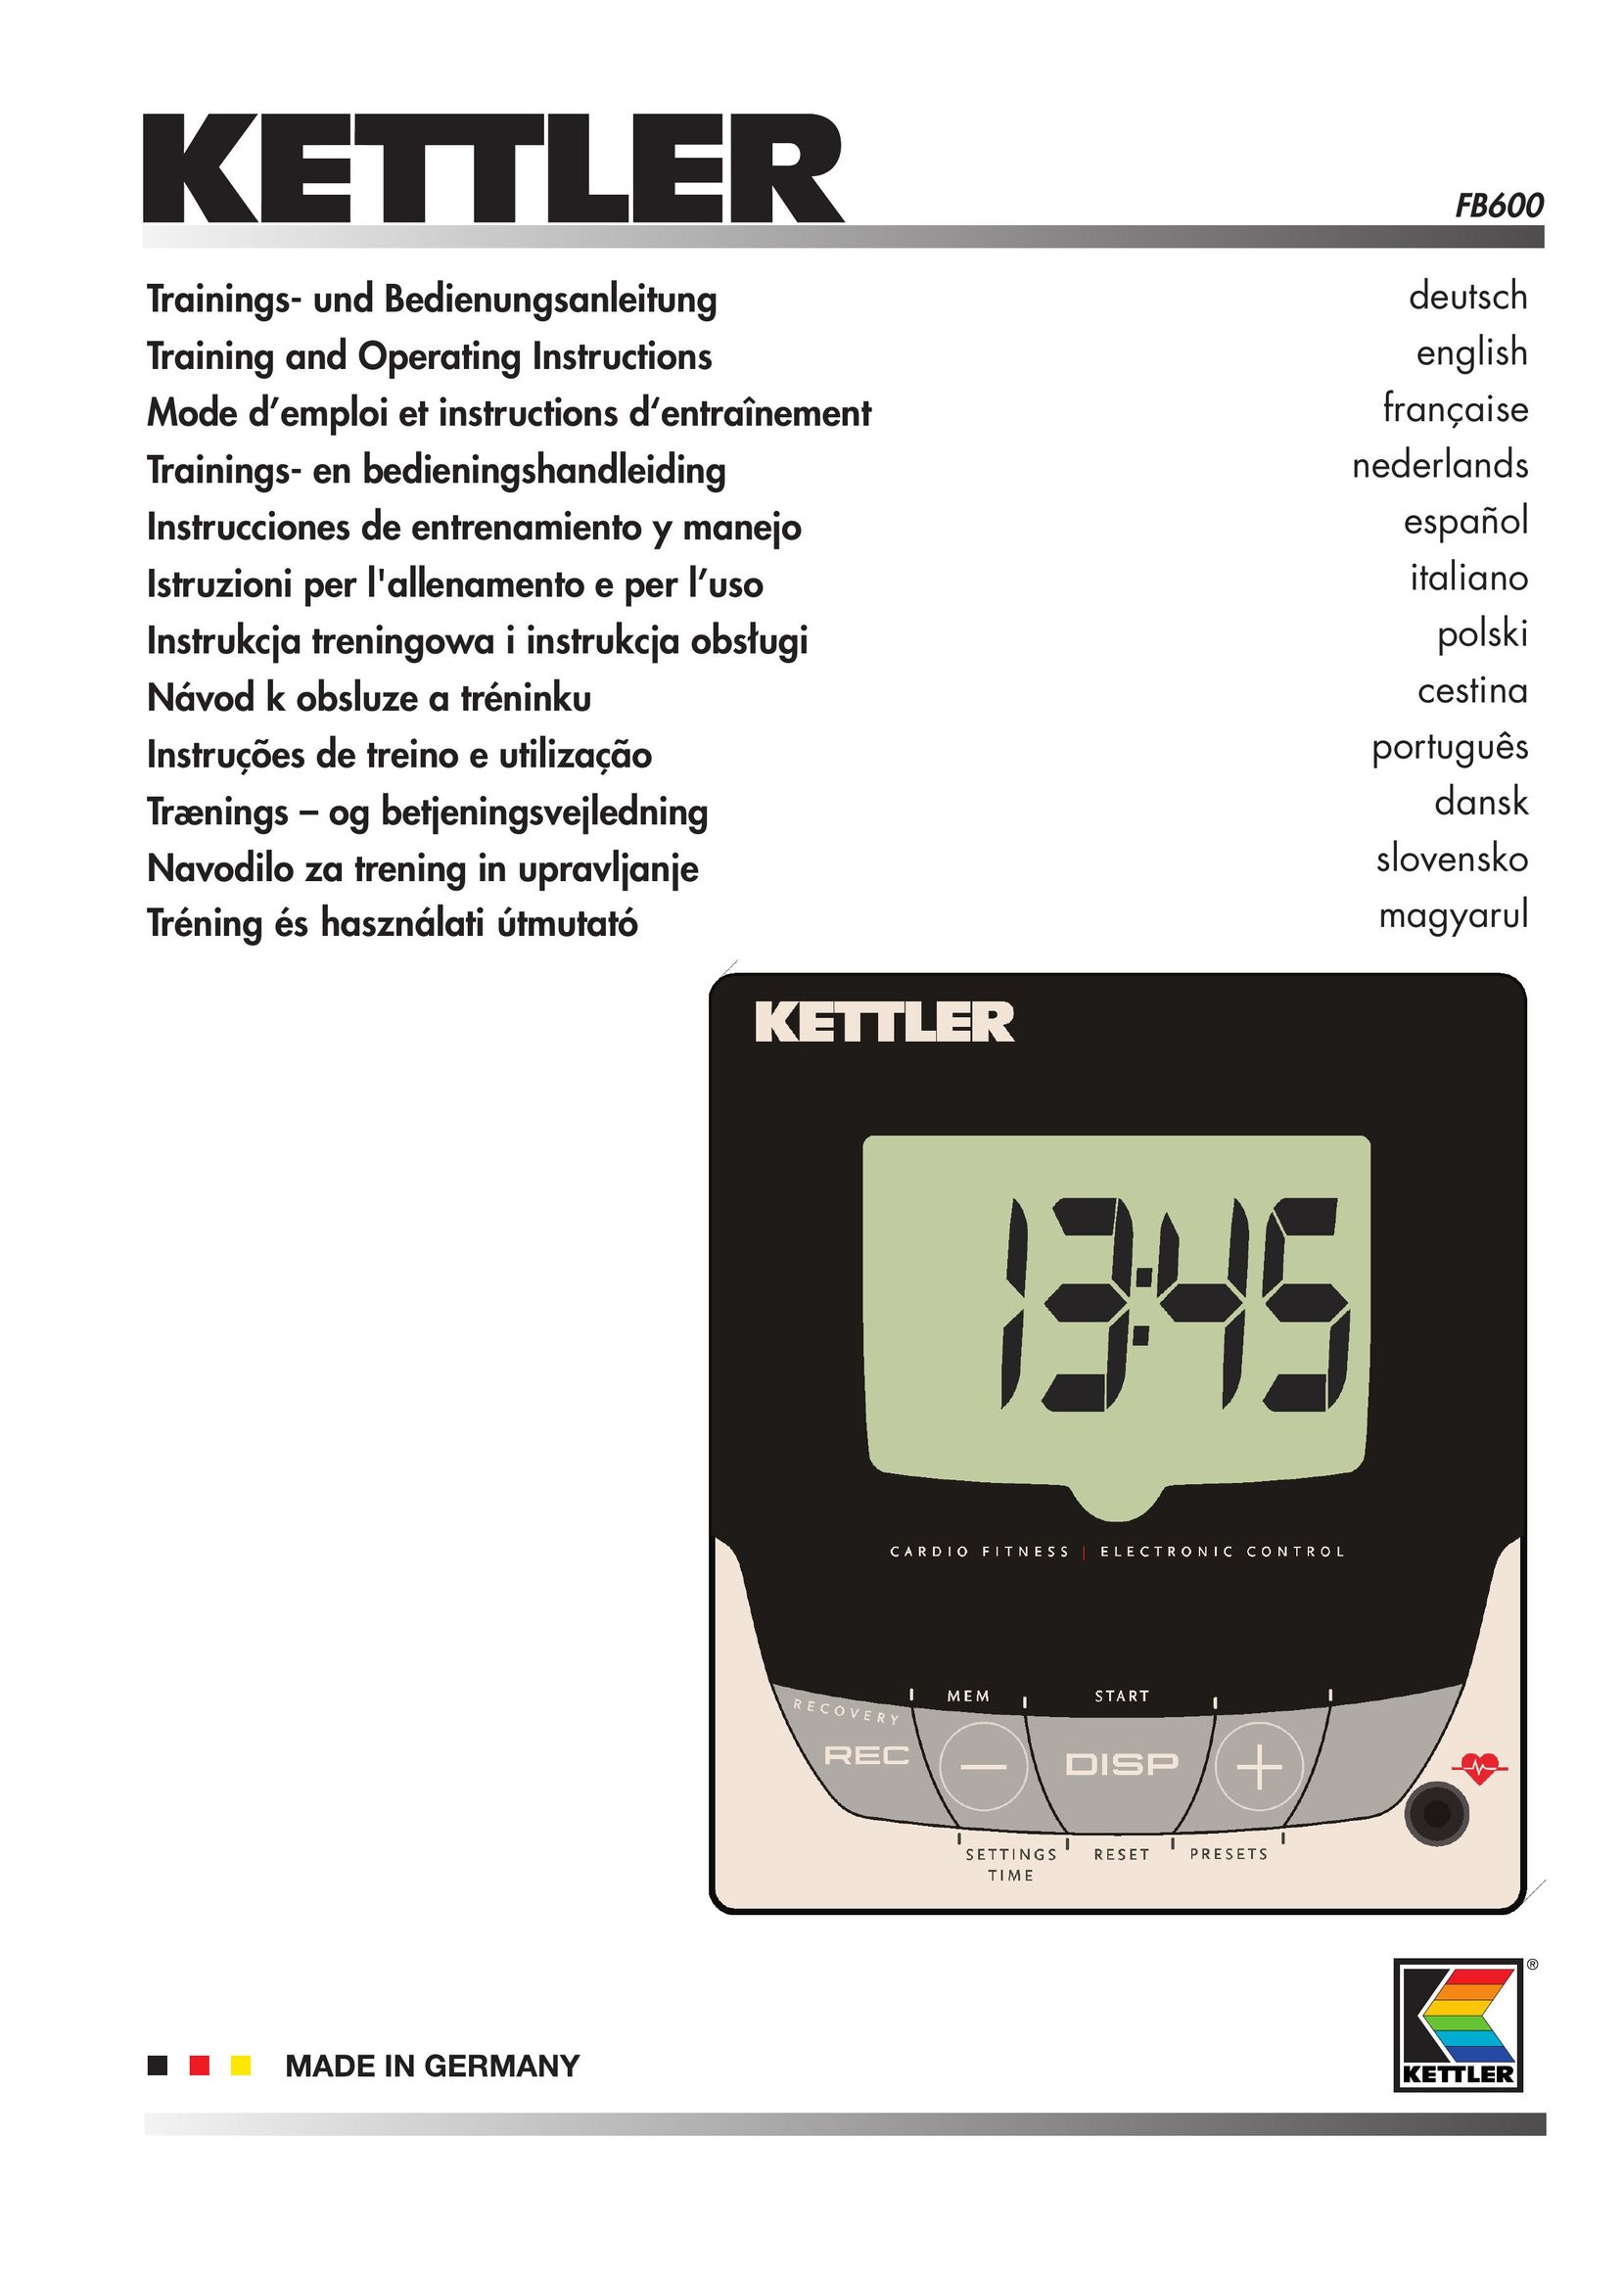 Kettler FB600 Laminator User Manual